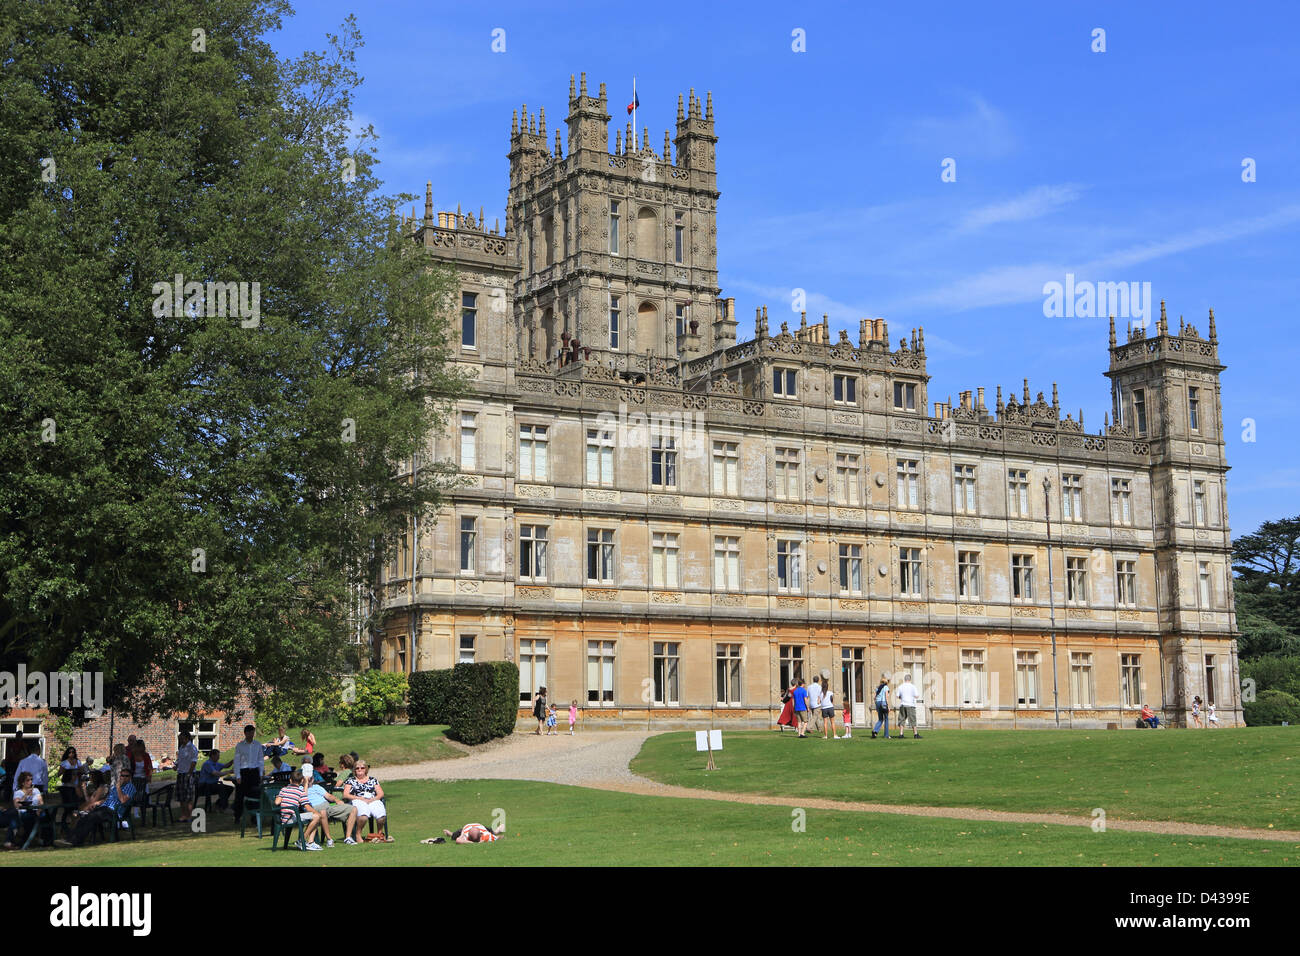 Château de Highclere, accueil du Comte et comtesse de Carnarvon, et lieu de tournage de la série télévisée Downton Abbey, dans le Berkshire, Royaume-Uni Banque D'Images